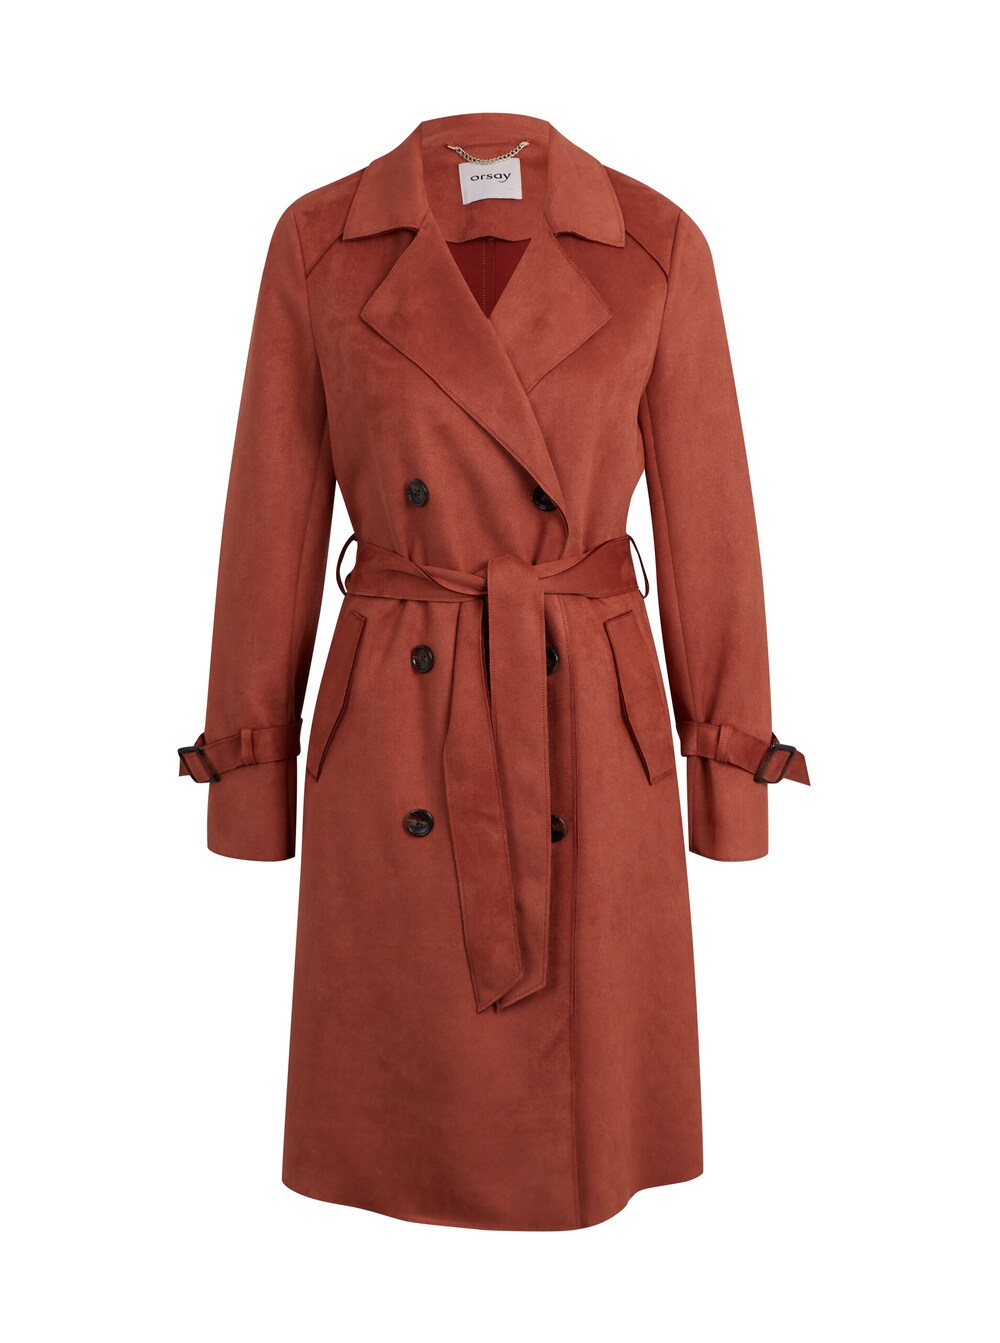 Межсезонное пальто Orsay, каштановый межсезонное пальто esprit каштановый